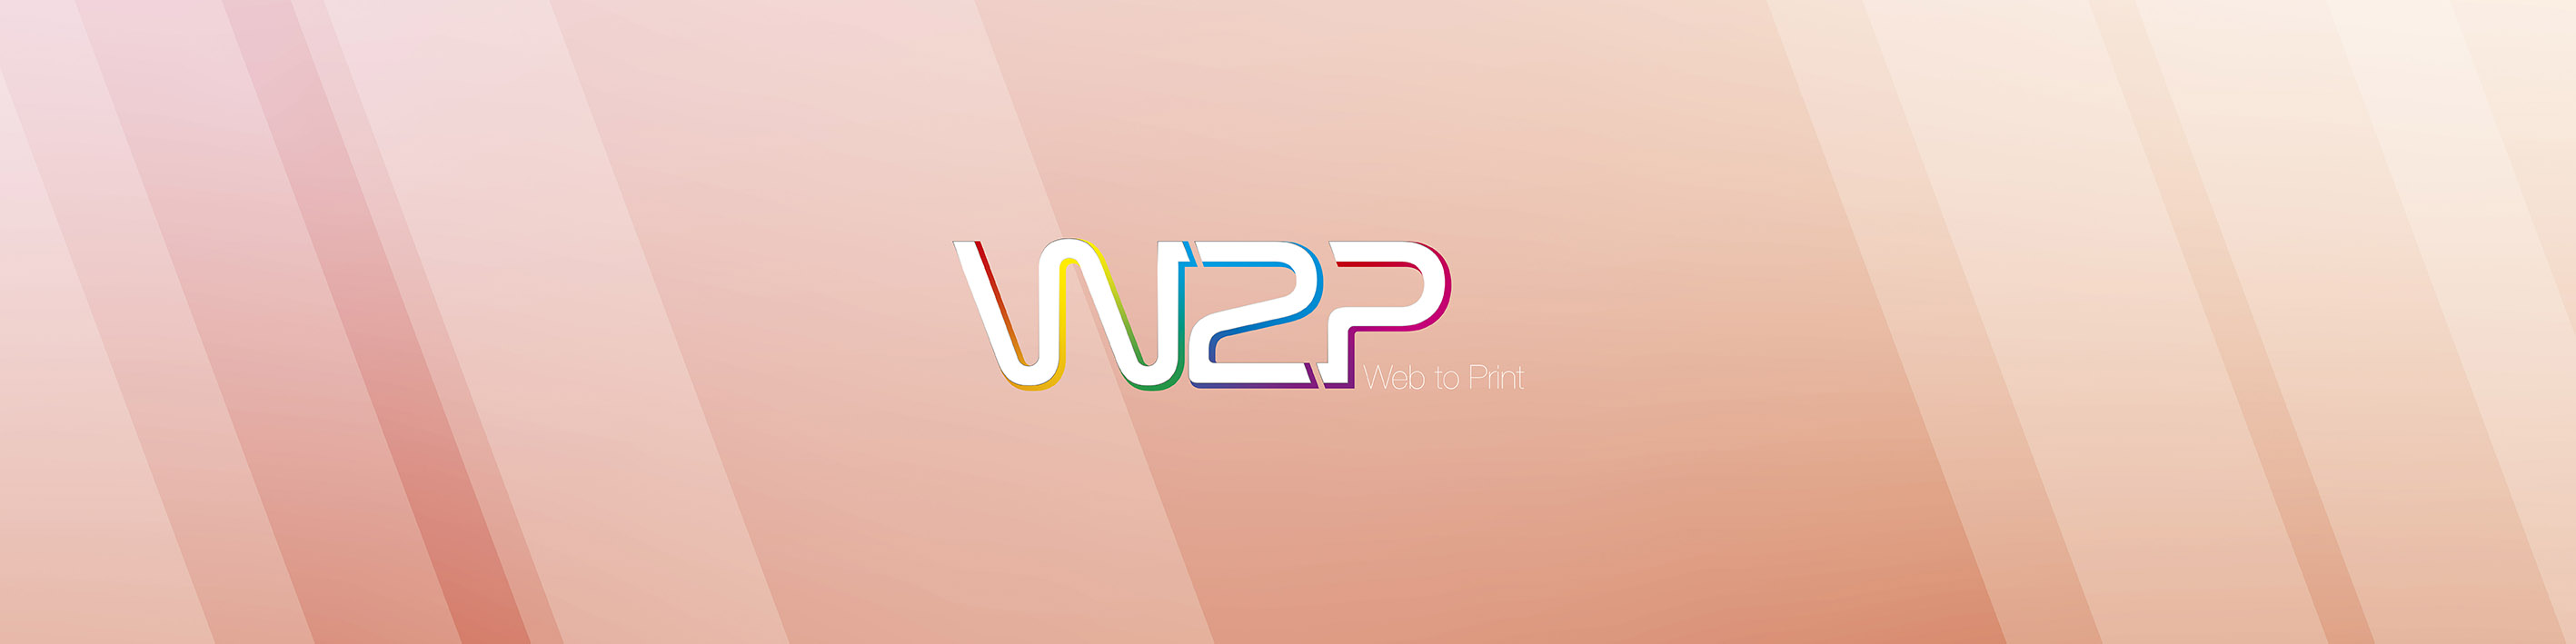 Bannière W2P - Web to Print